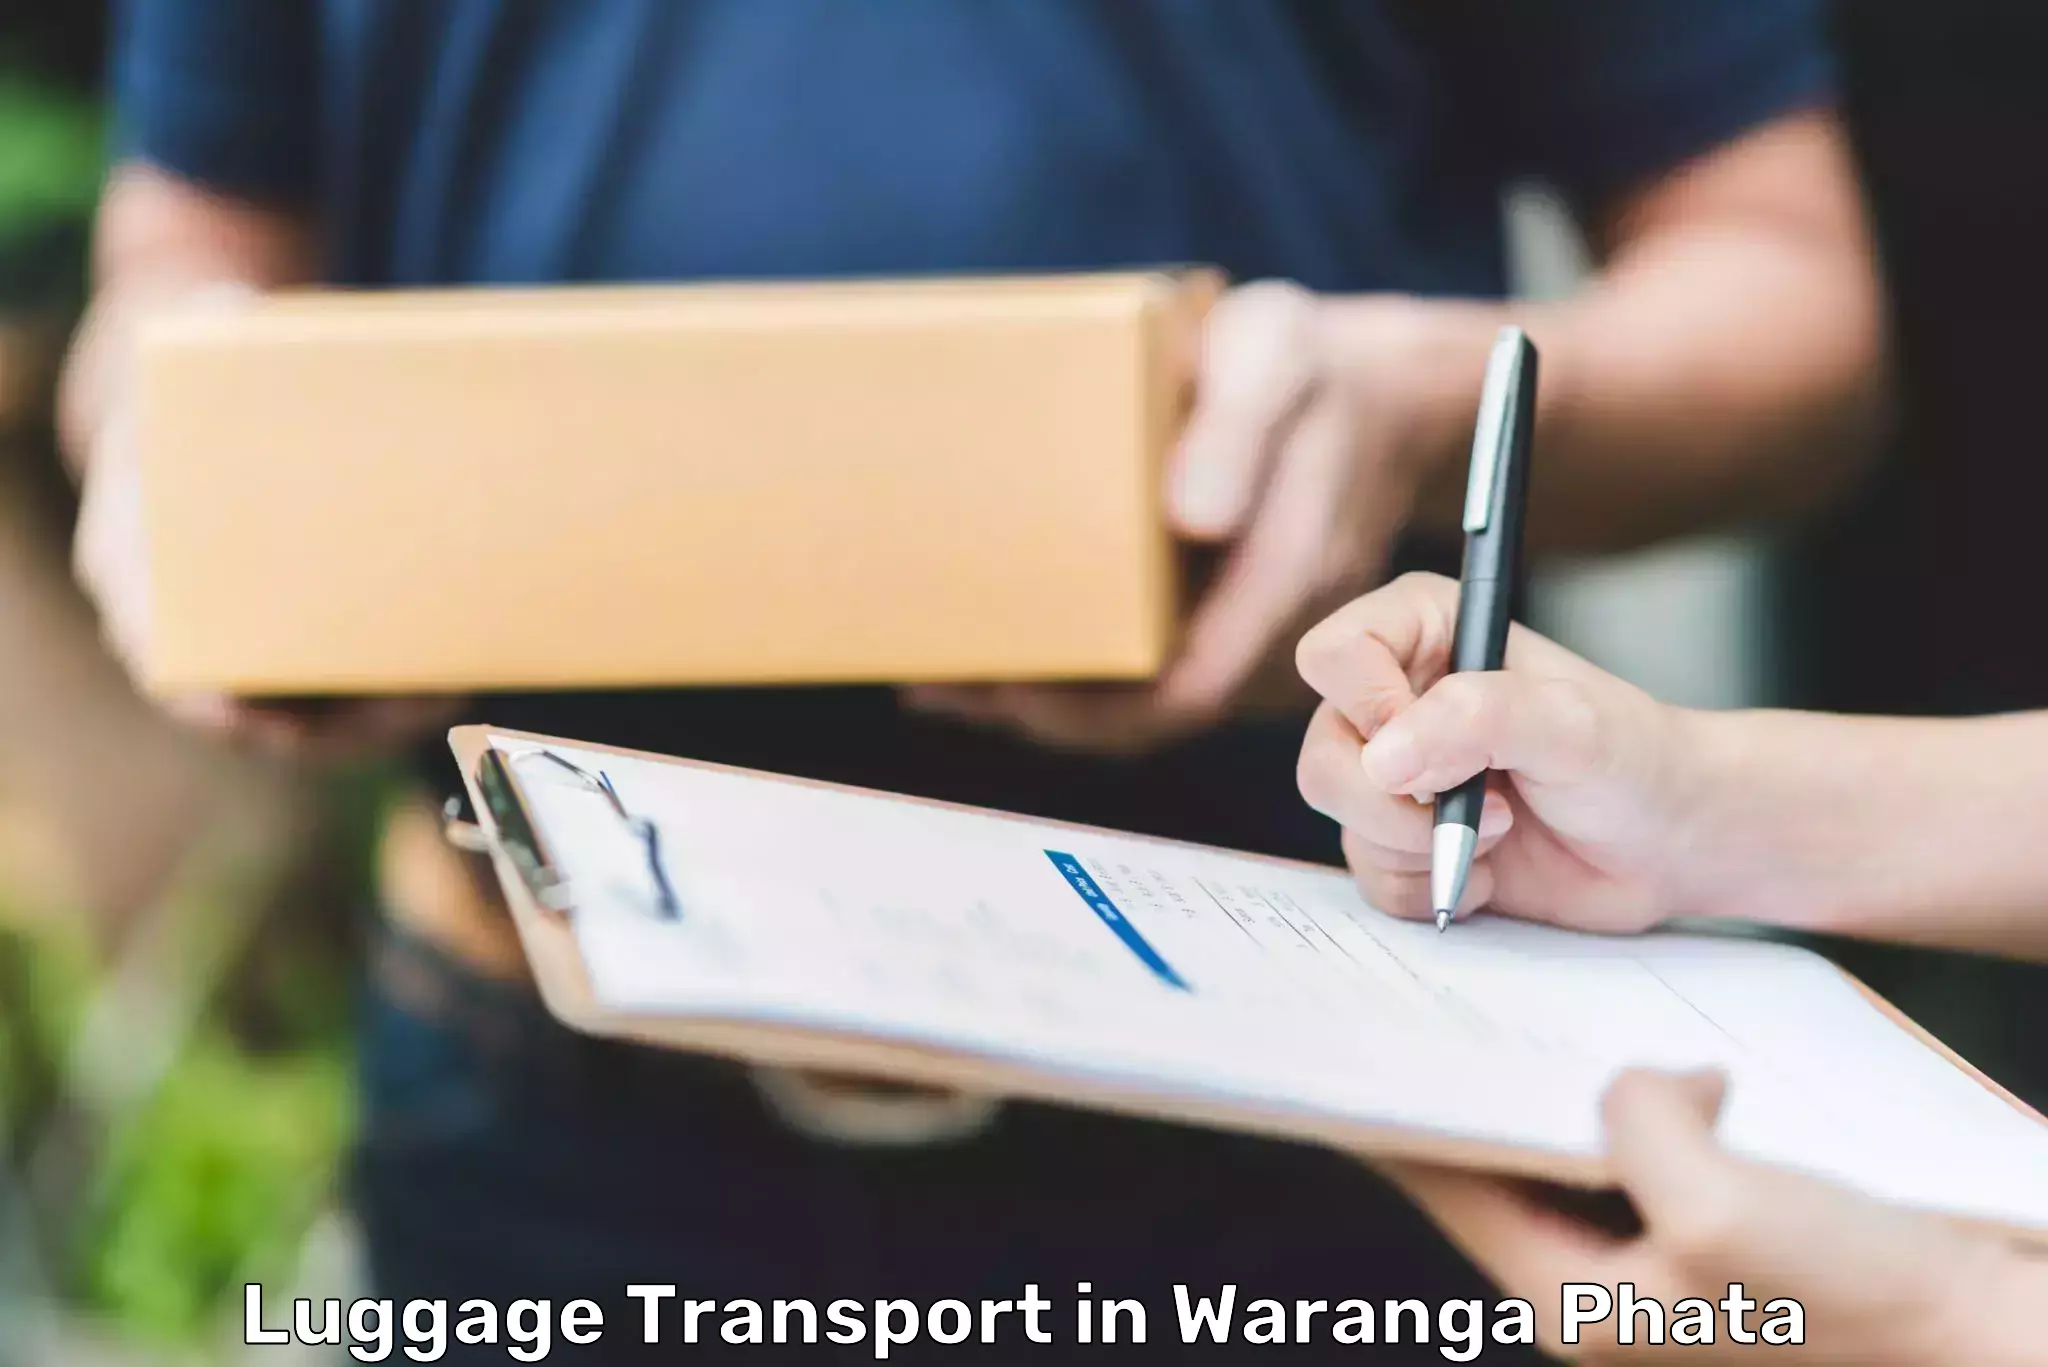 Luggage shipment strategy in Waranga Phata